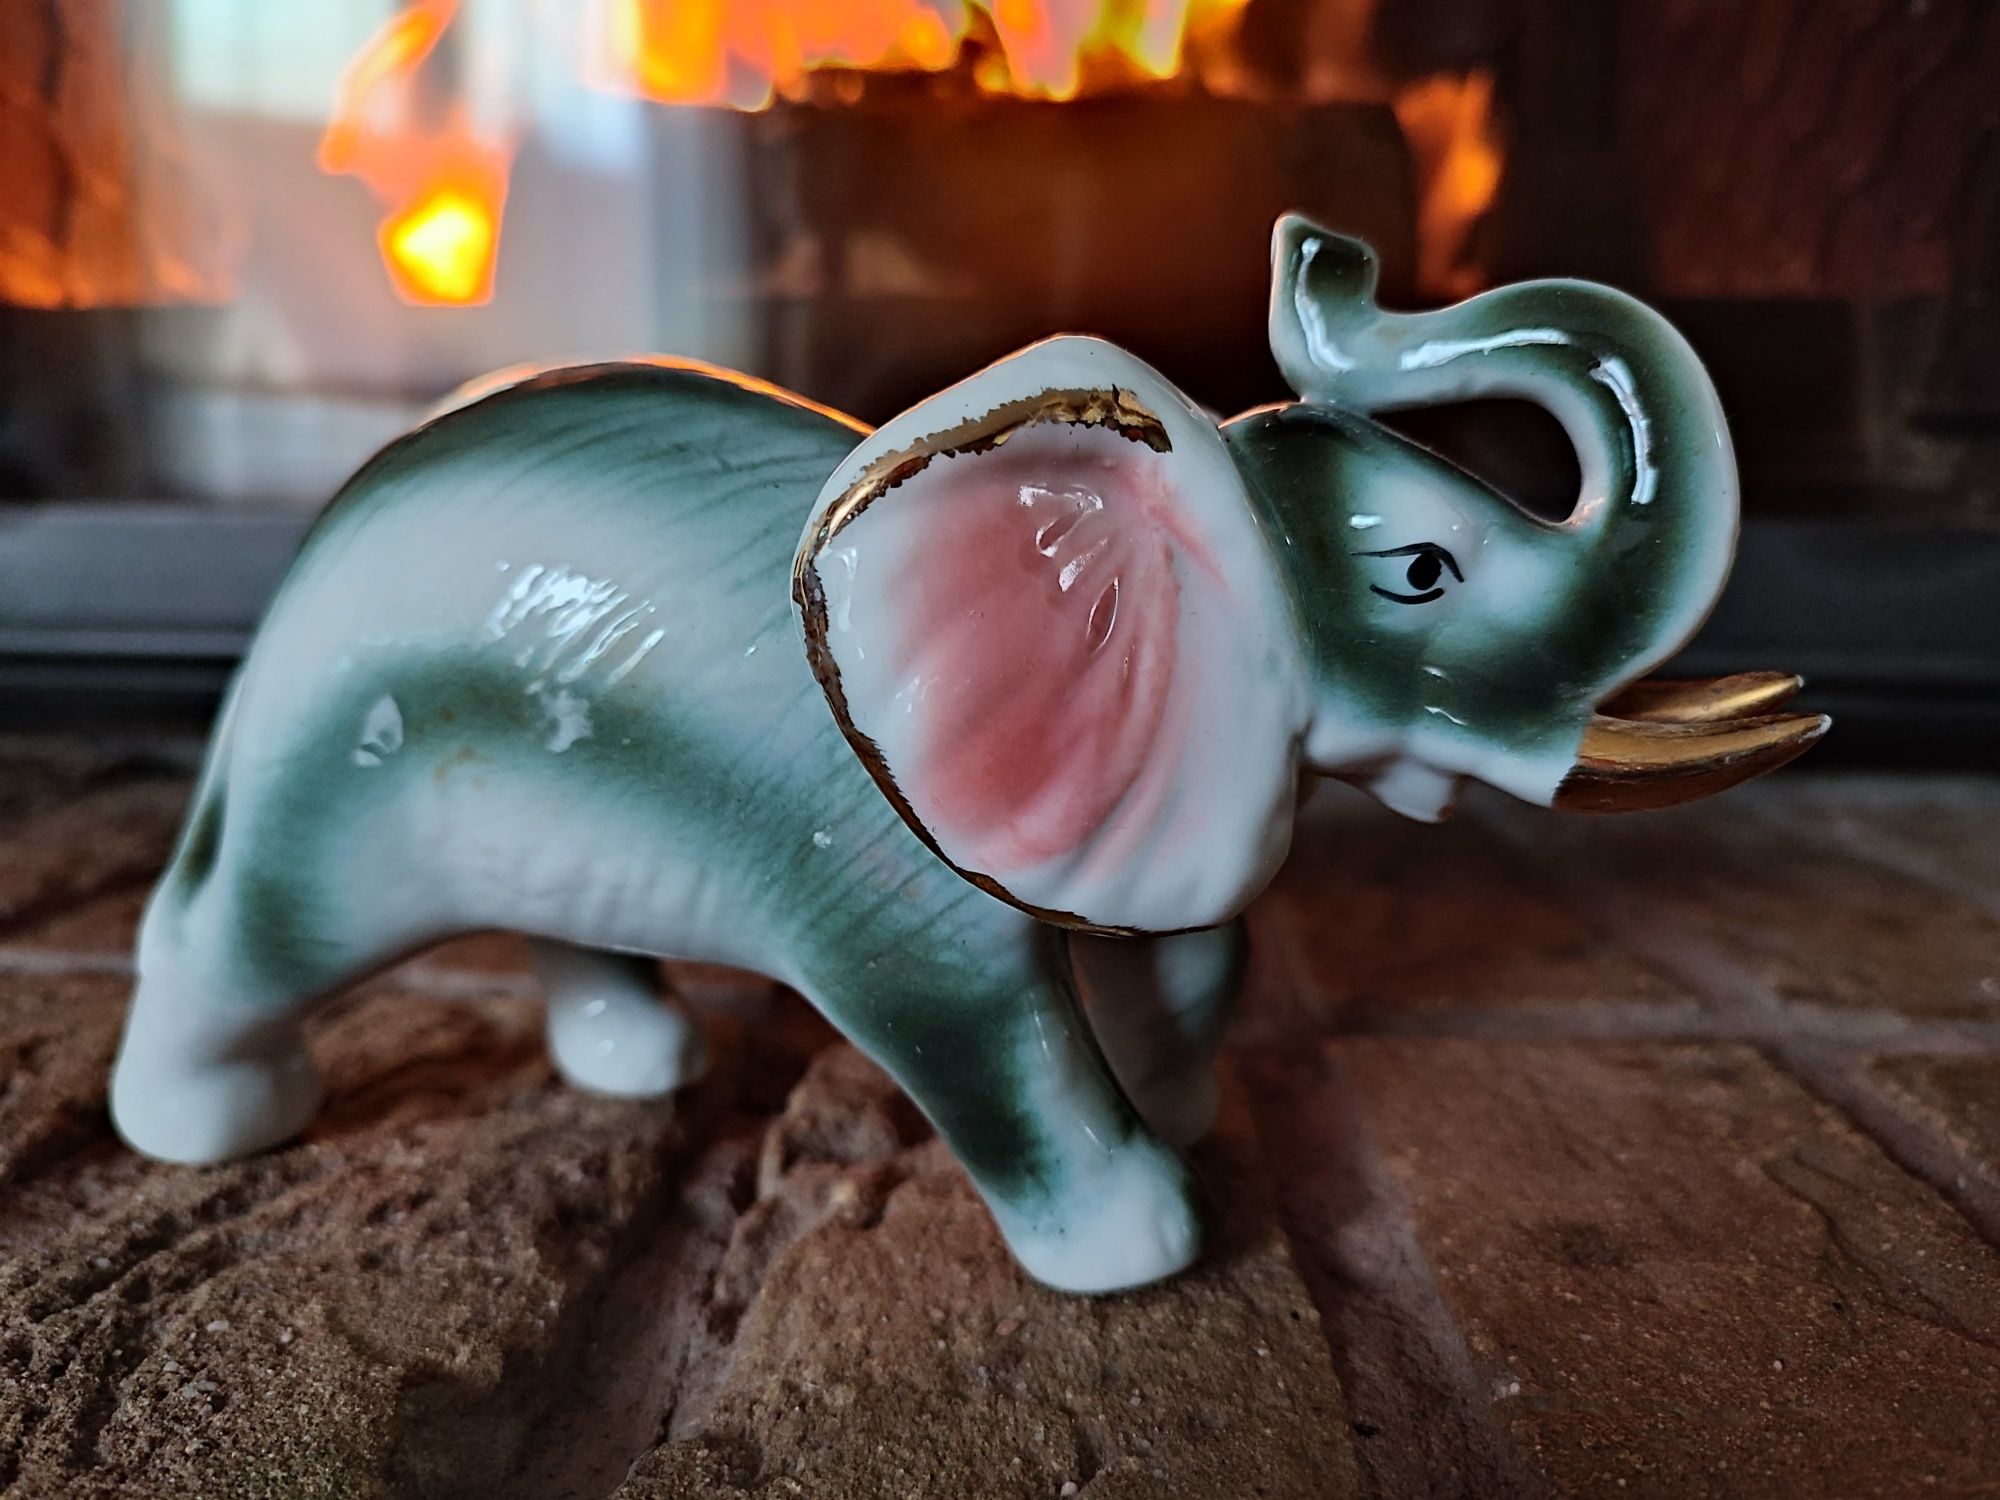 Słoń porcelanowy